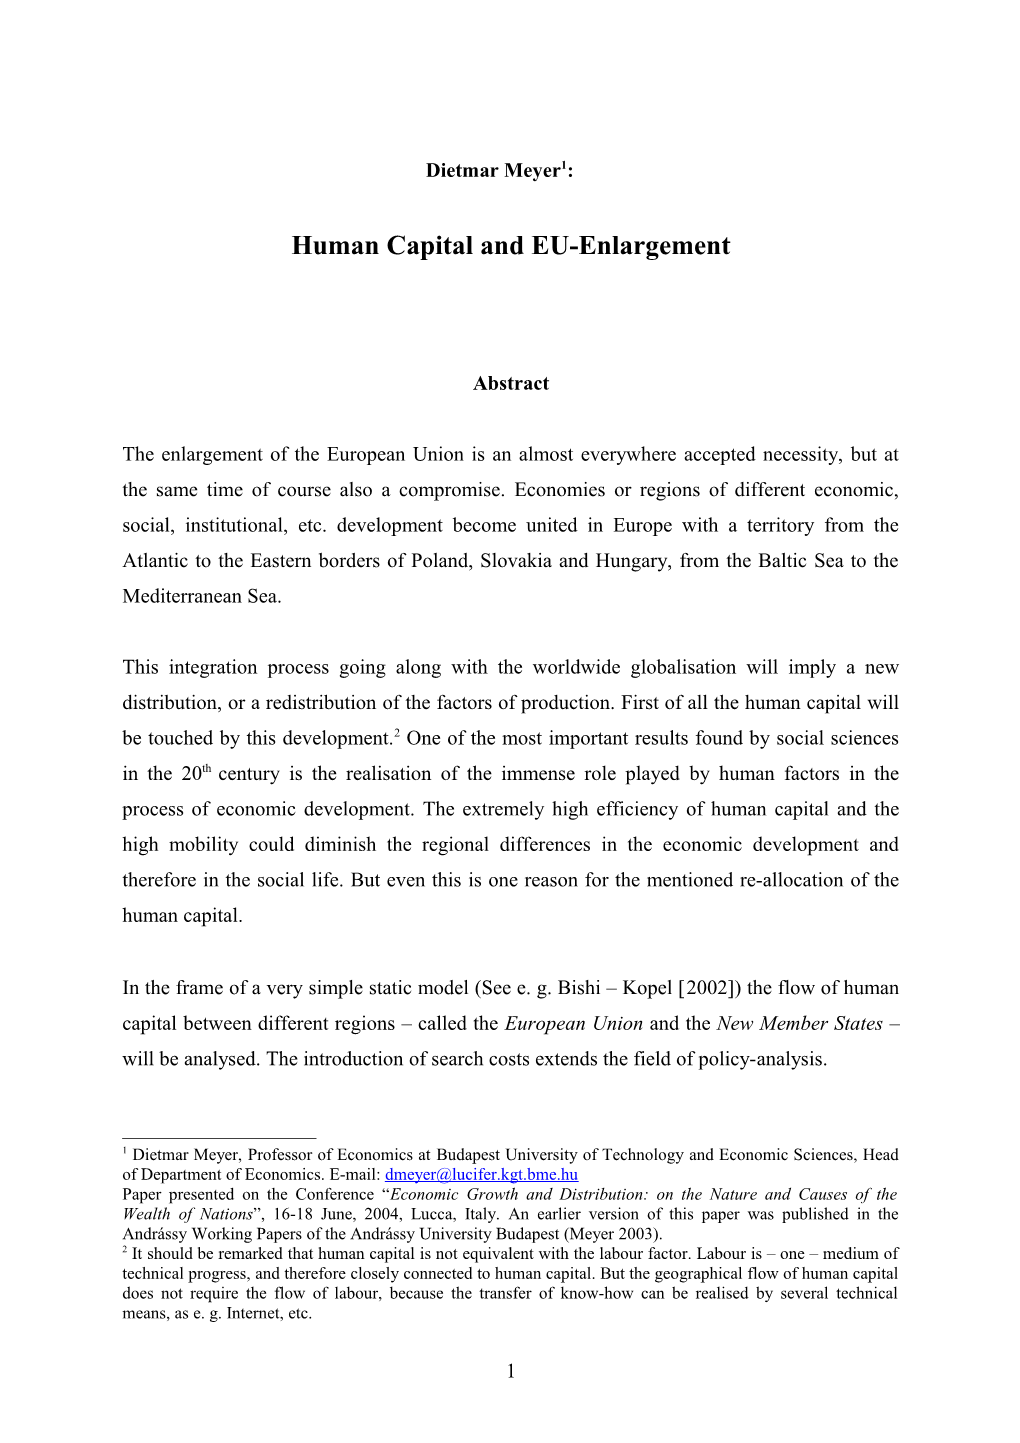 Human Capital and EU-Enlargement